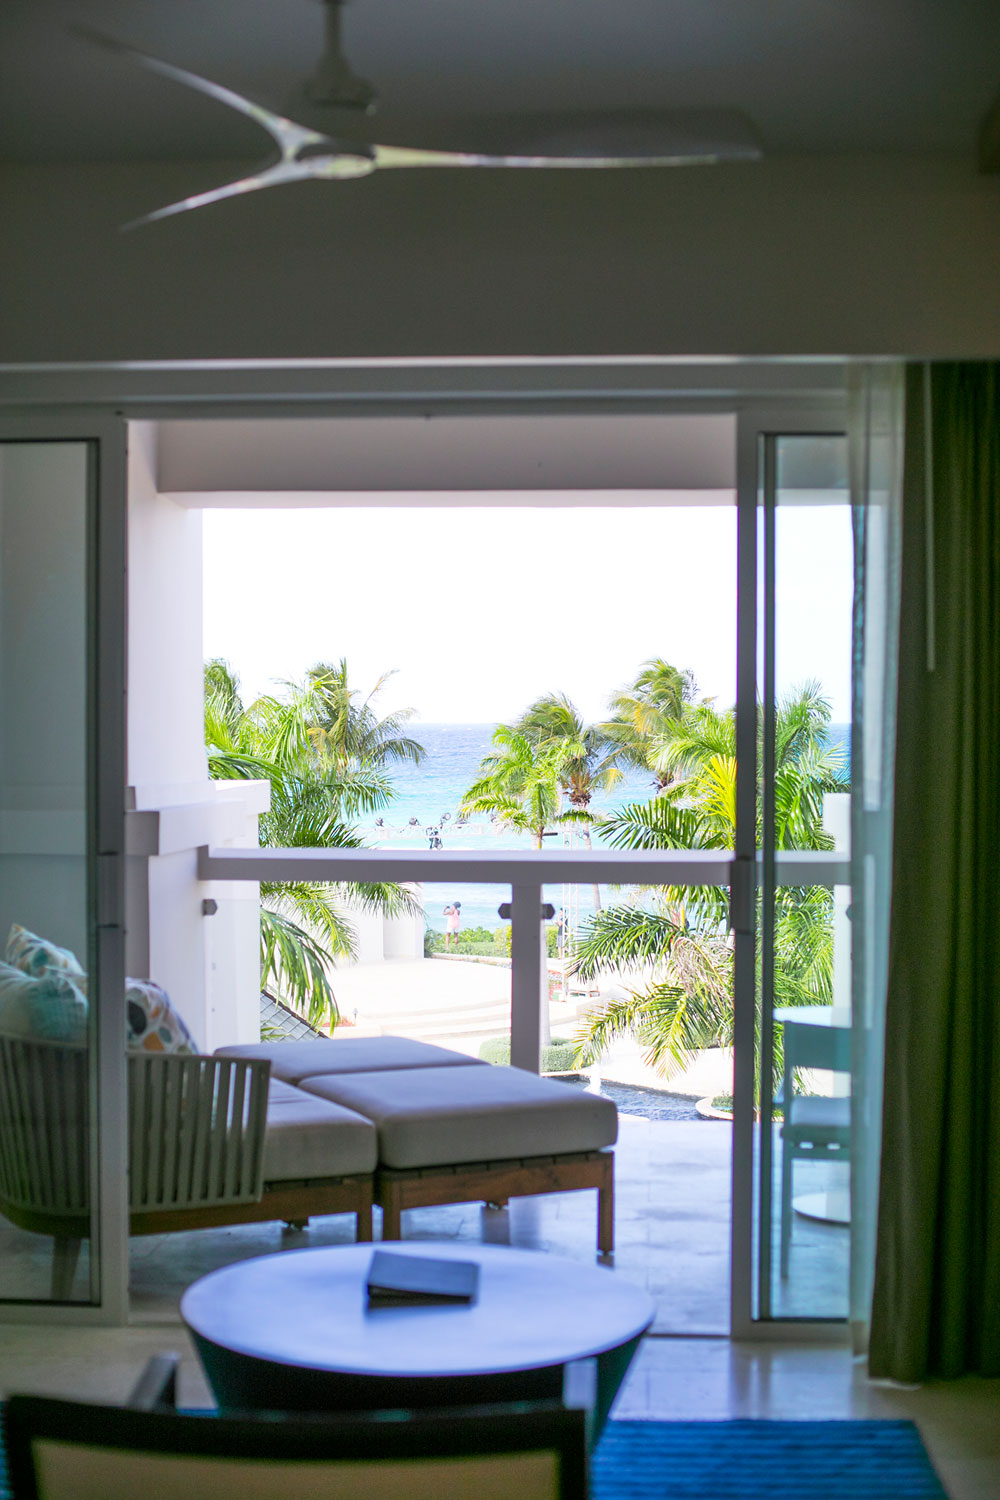 Views from the Hyatt Ziva Jamaica Resort